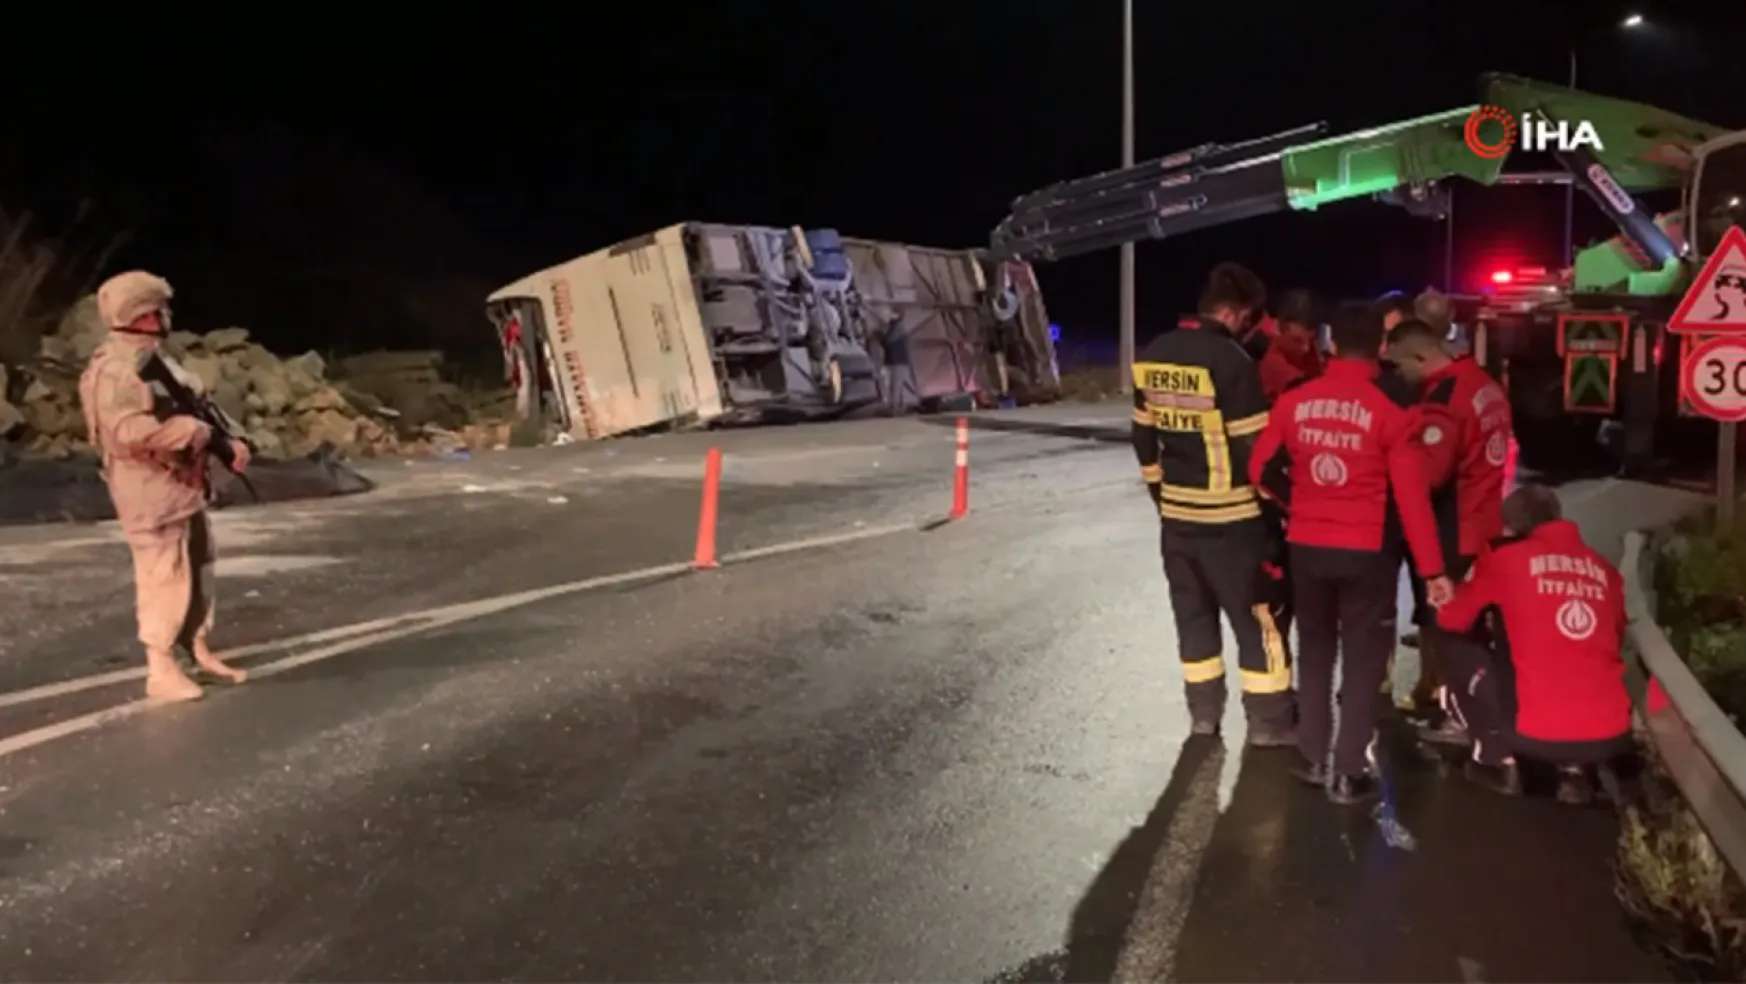 Mersin'de Feci Trafik Kazası: Otobüs Devrildi 9 Kişi Hayatını Kaybetti 30 Kişi Yaralandı